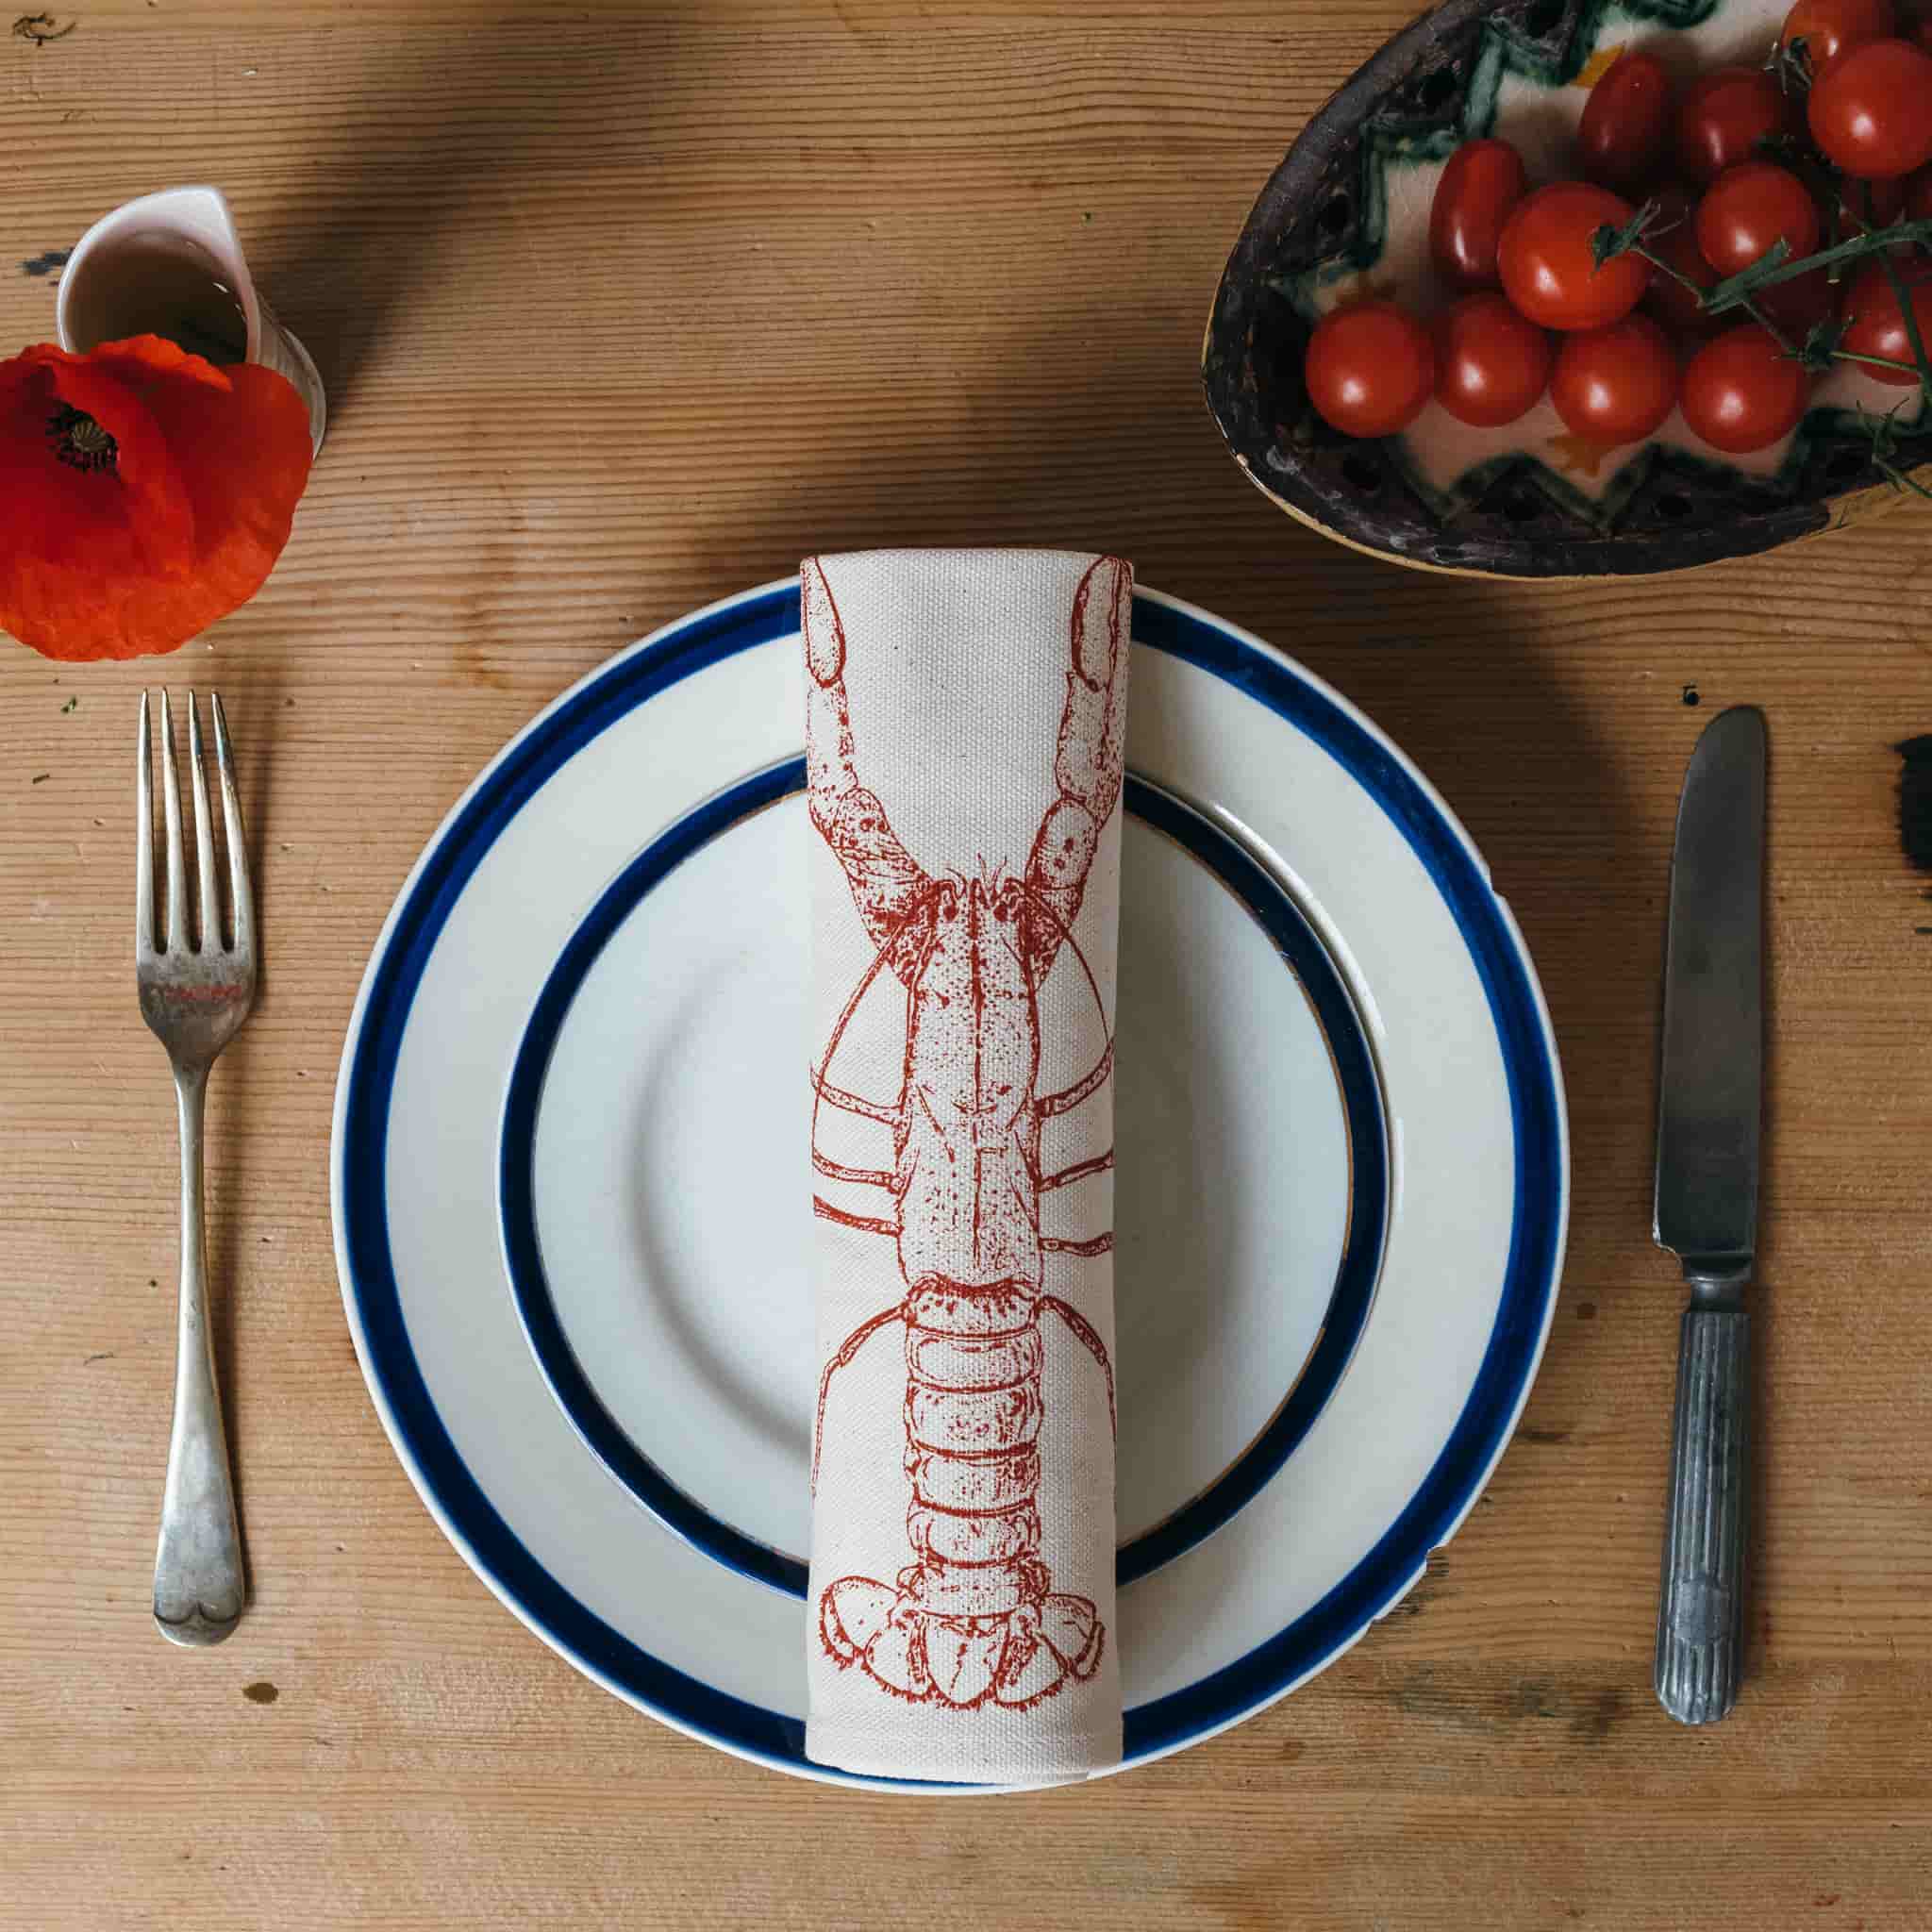 Lobster Design Napkins Box of 6